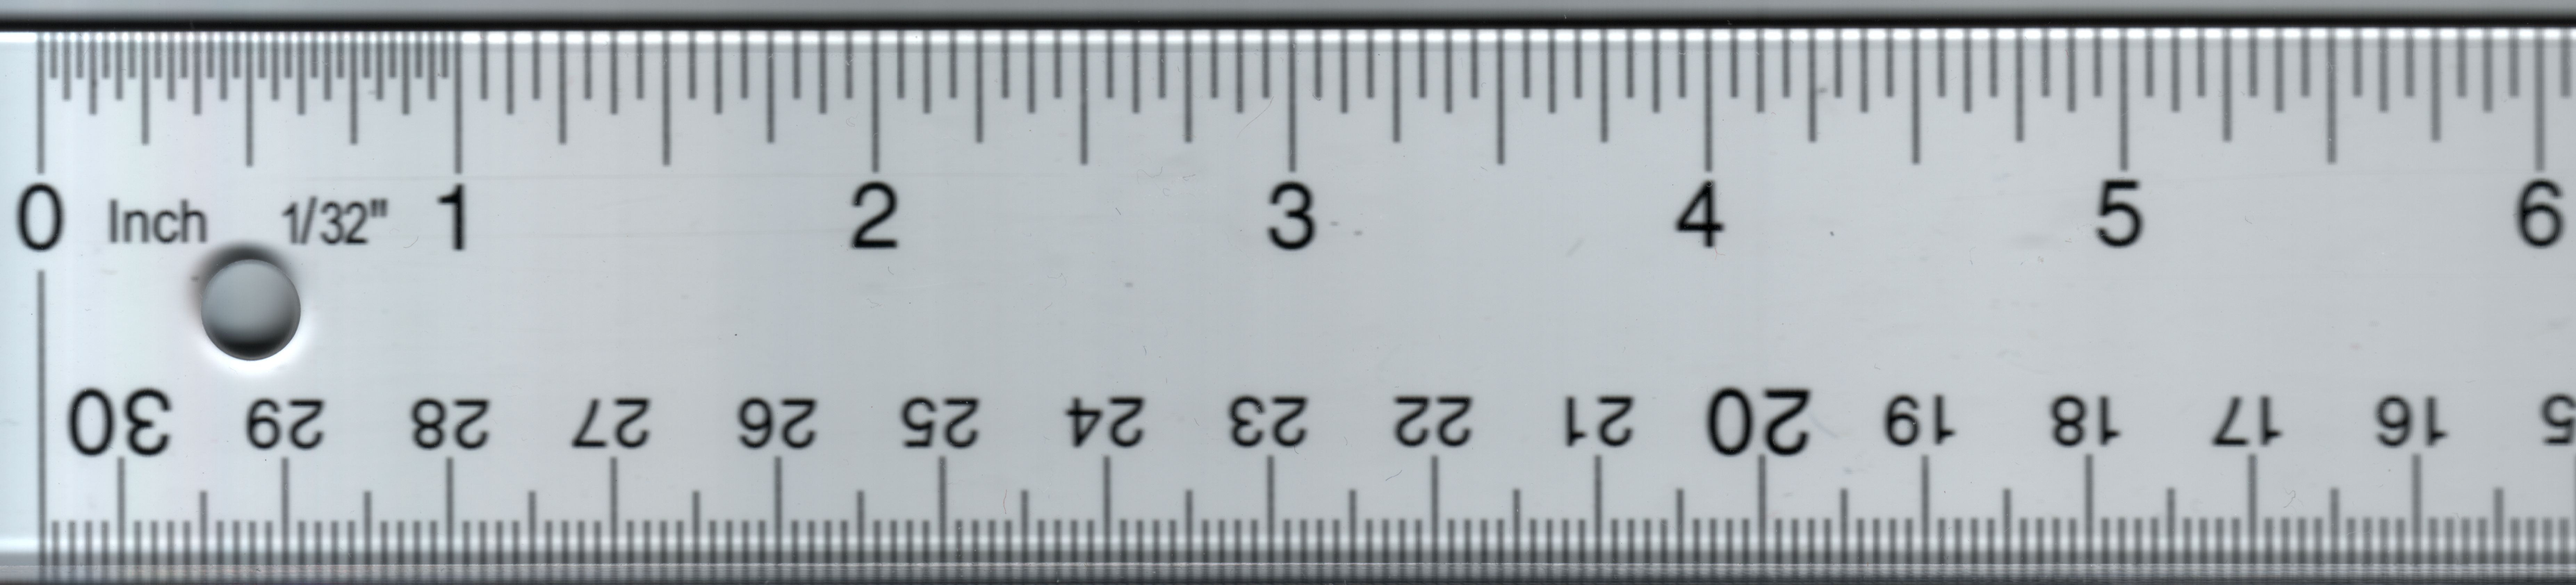 13 см 4 мм. Линейка 1 см реальный размер. 2 5 См на линейке. Линейка в реальном размере. Линейка в реальную величину.